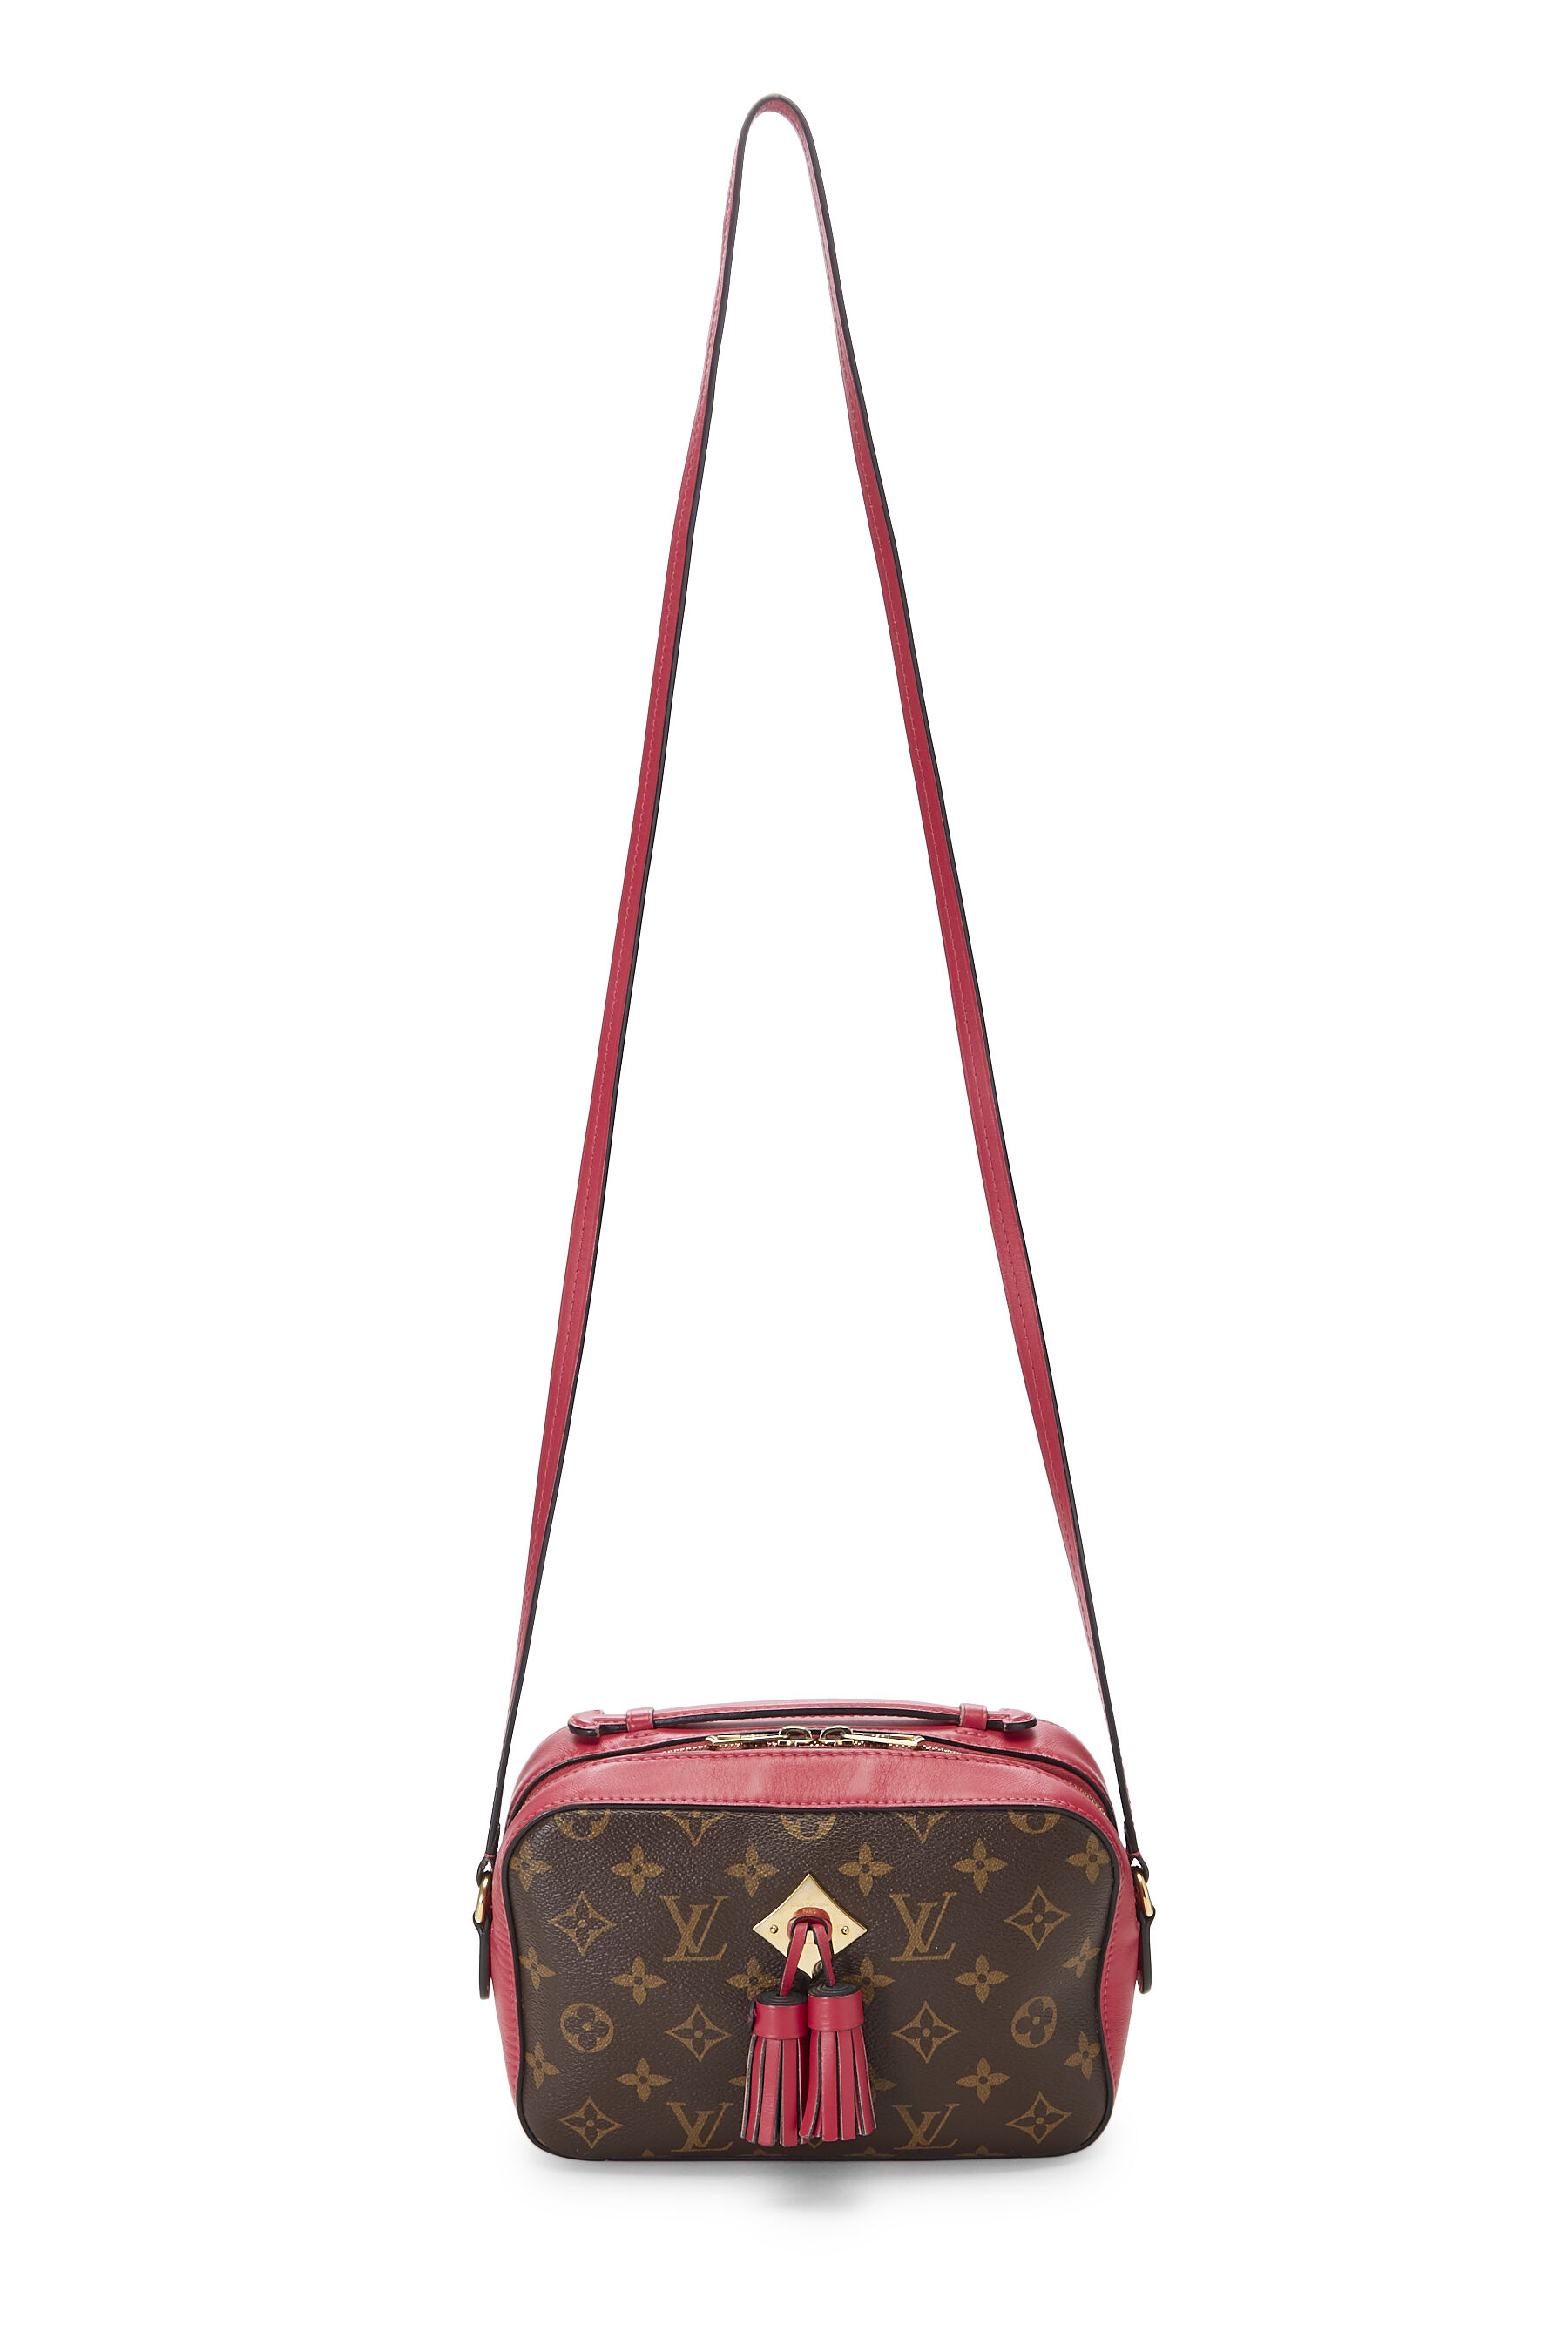 Louis Vuitton Monogram Saintonge Pink – DAC